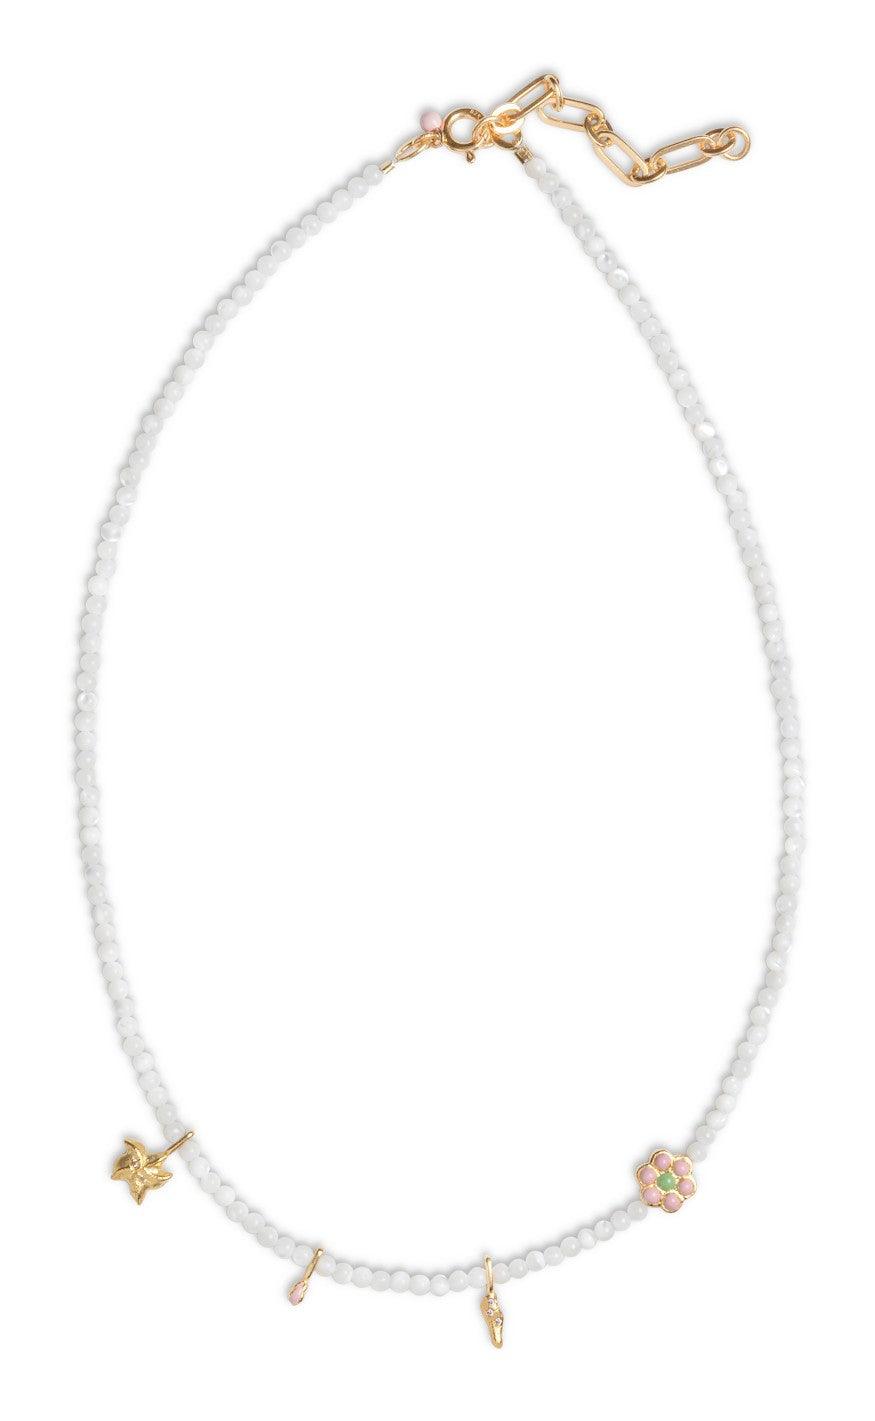 Se Enamel Bahama Pearl Forgyldt Sølv Halskæde med Hvide Perler hos Mulieres.dk